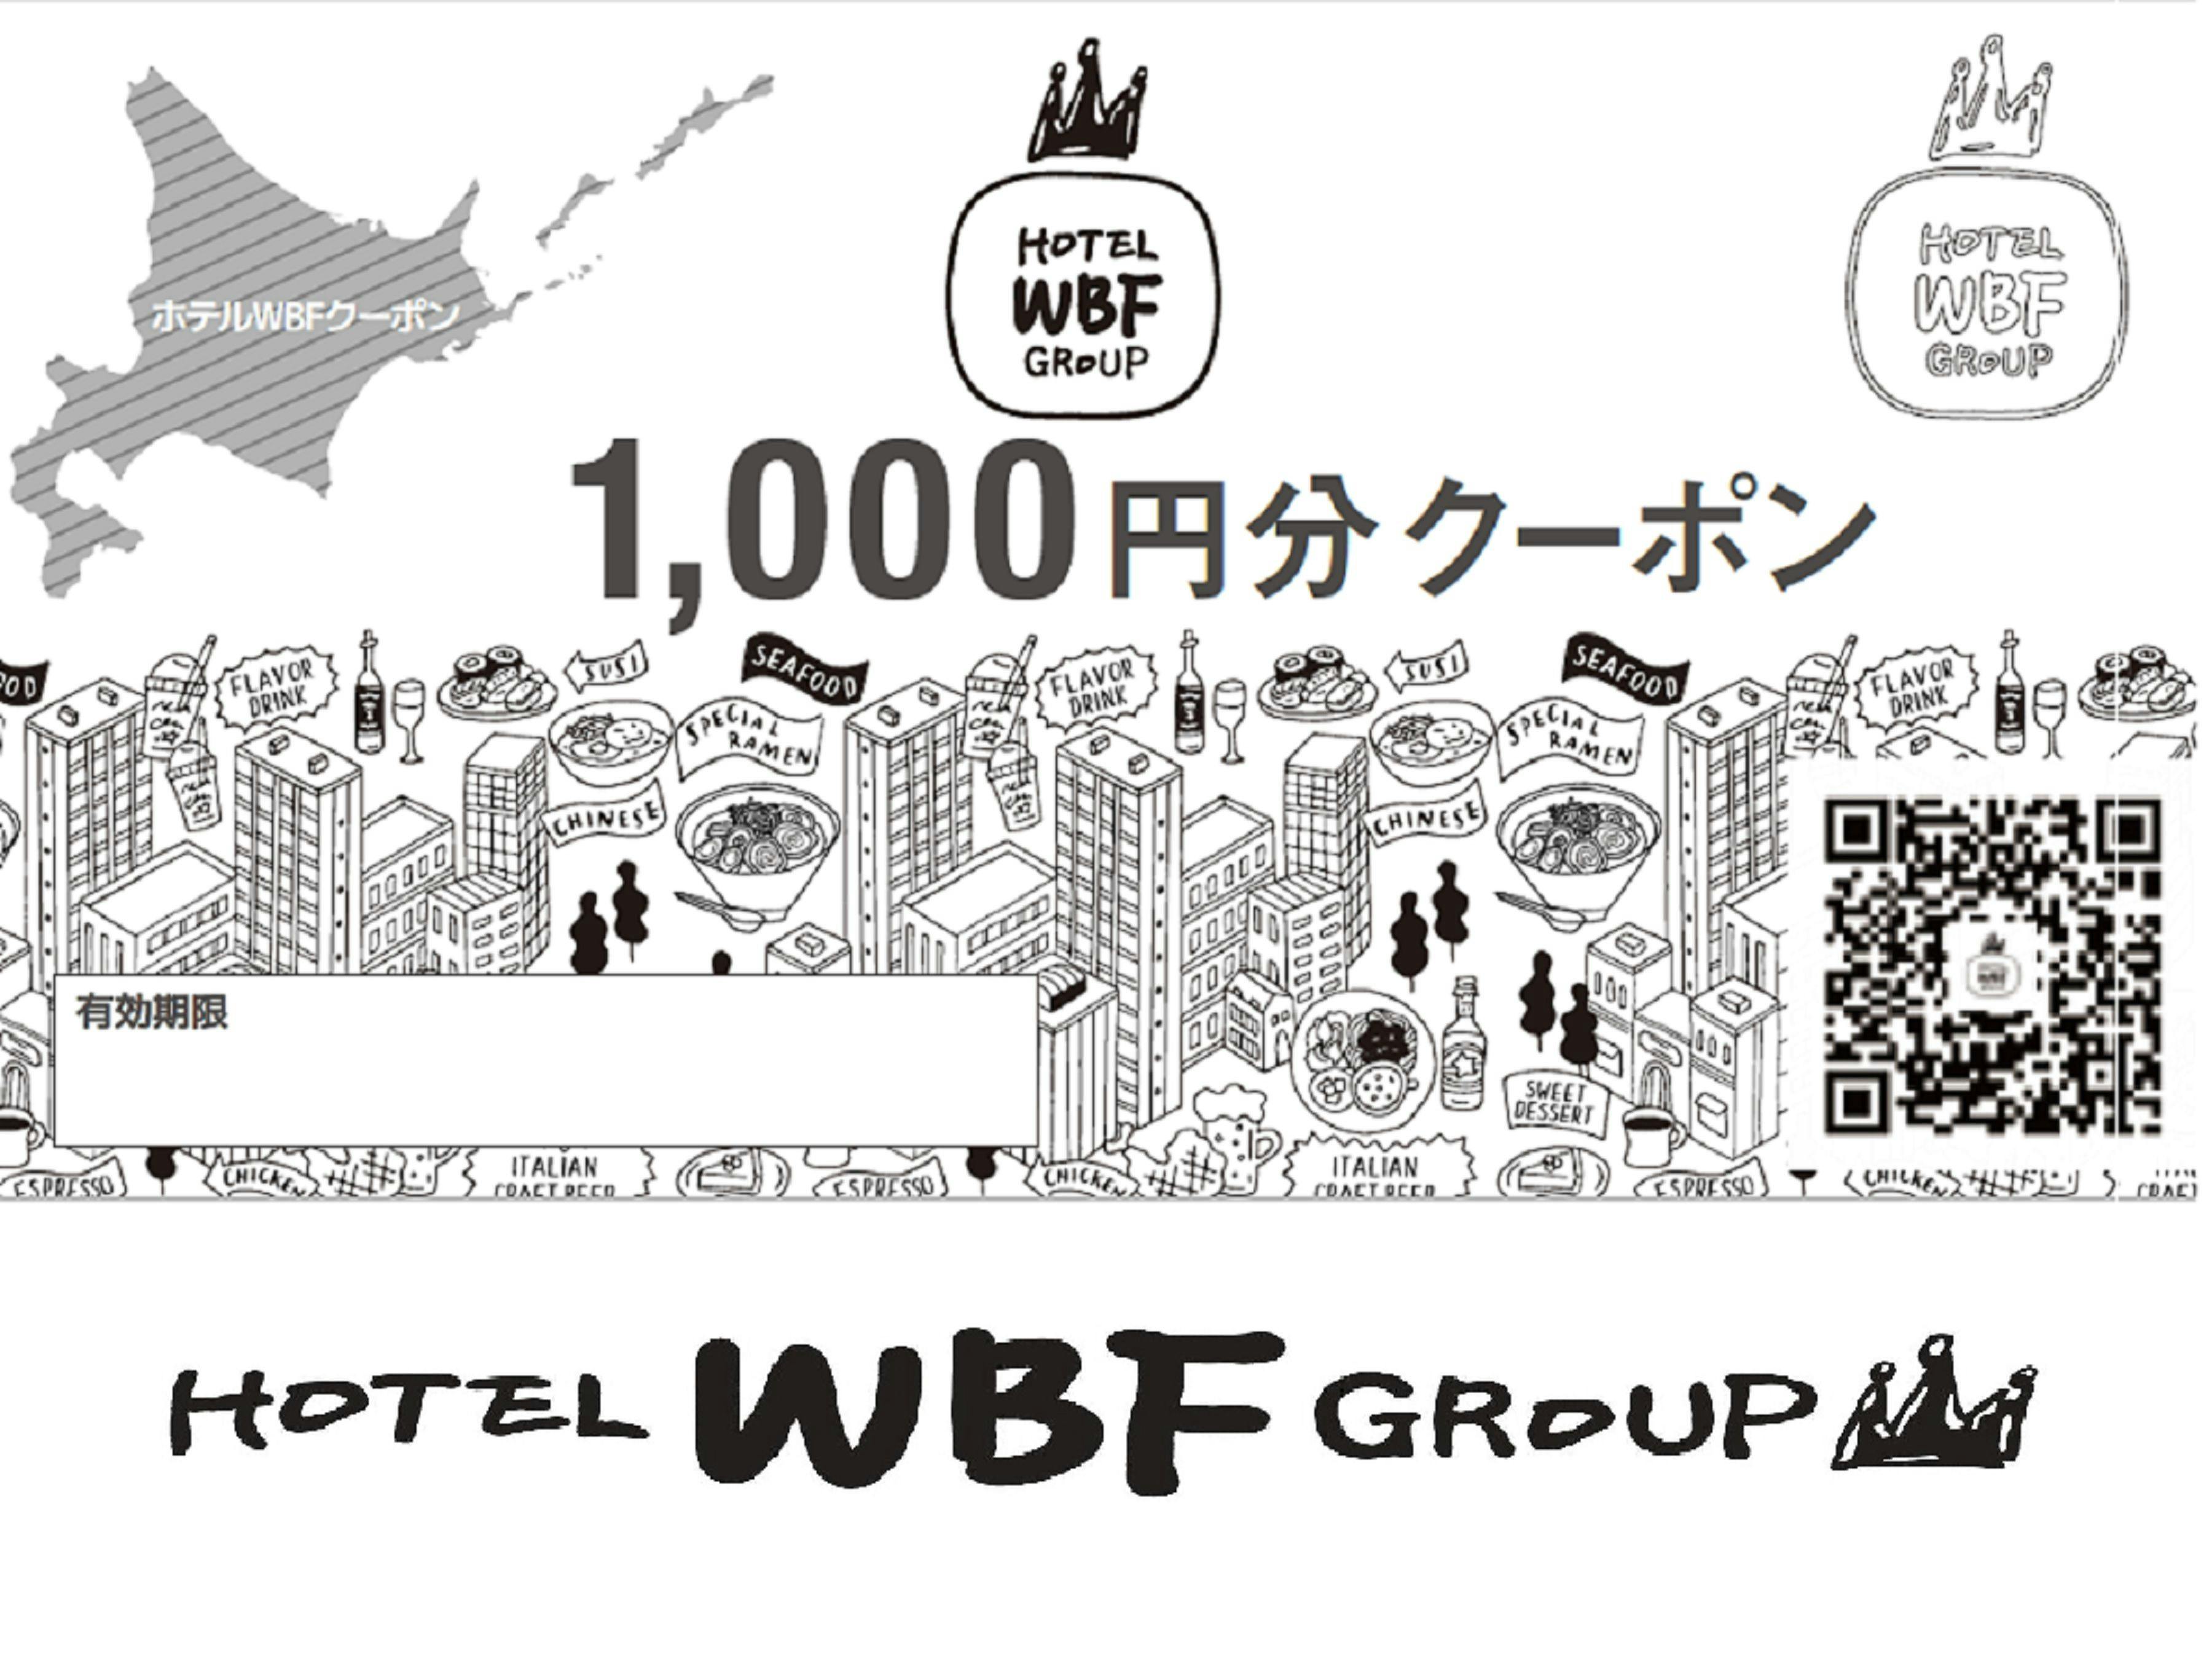 WBF クーポン 食事券 7000円分